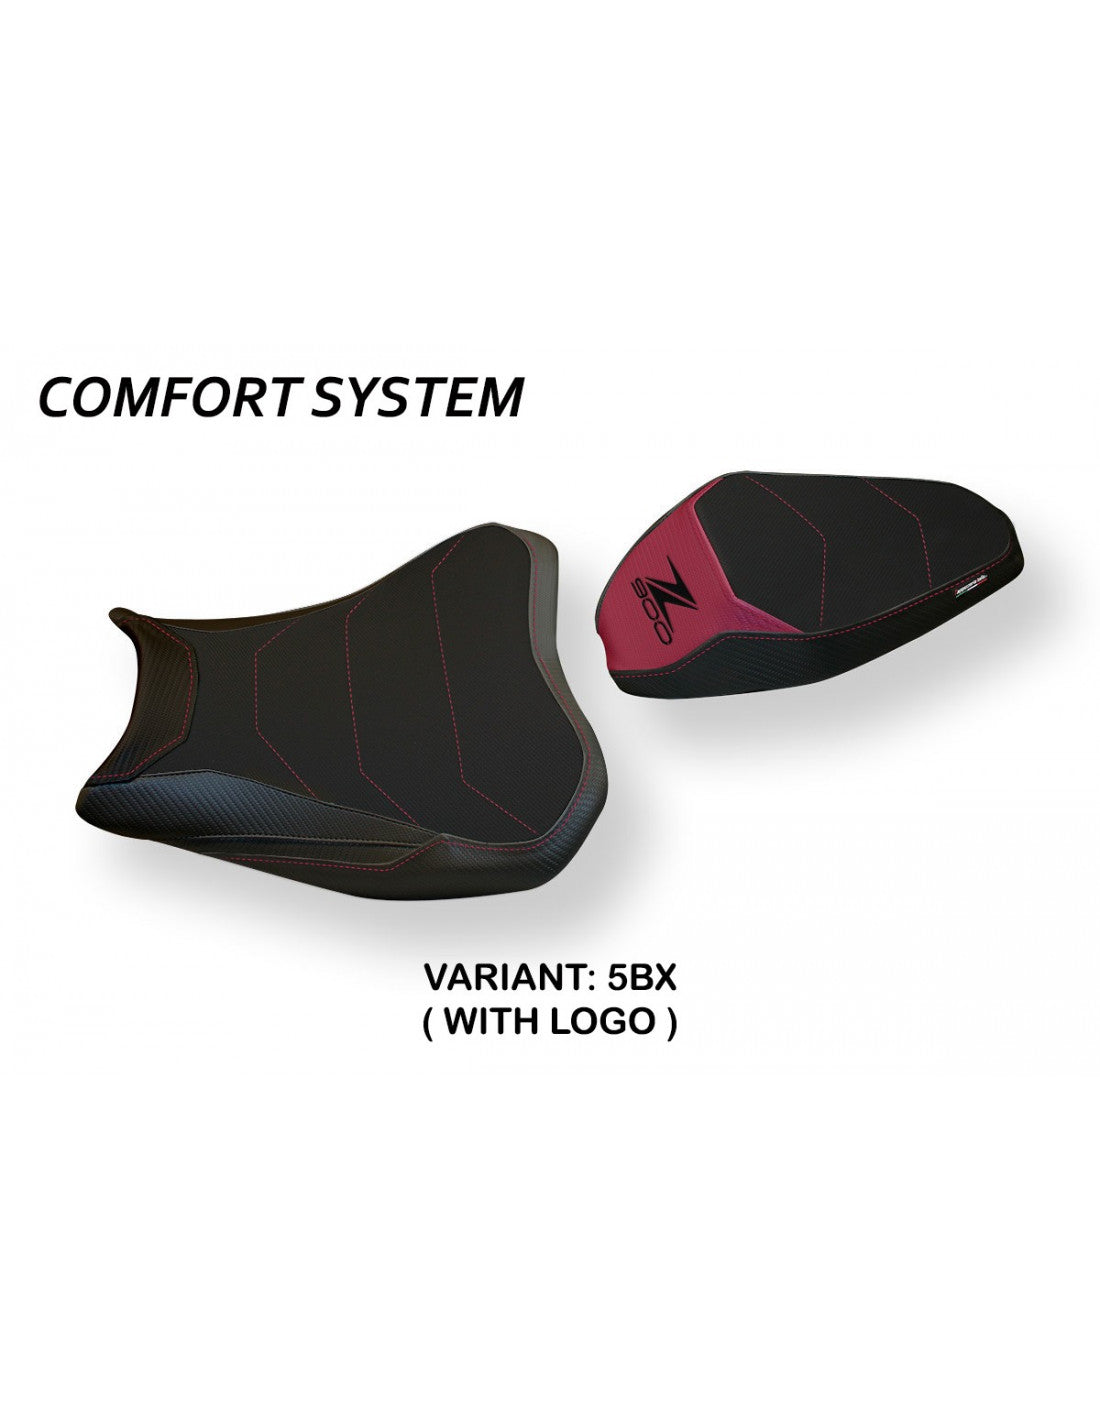 Tappezzeria Bran 3 Comfort System Seat Cover for Kawasaki Z900 2020